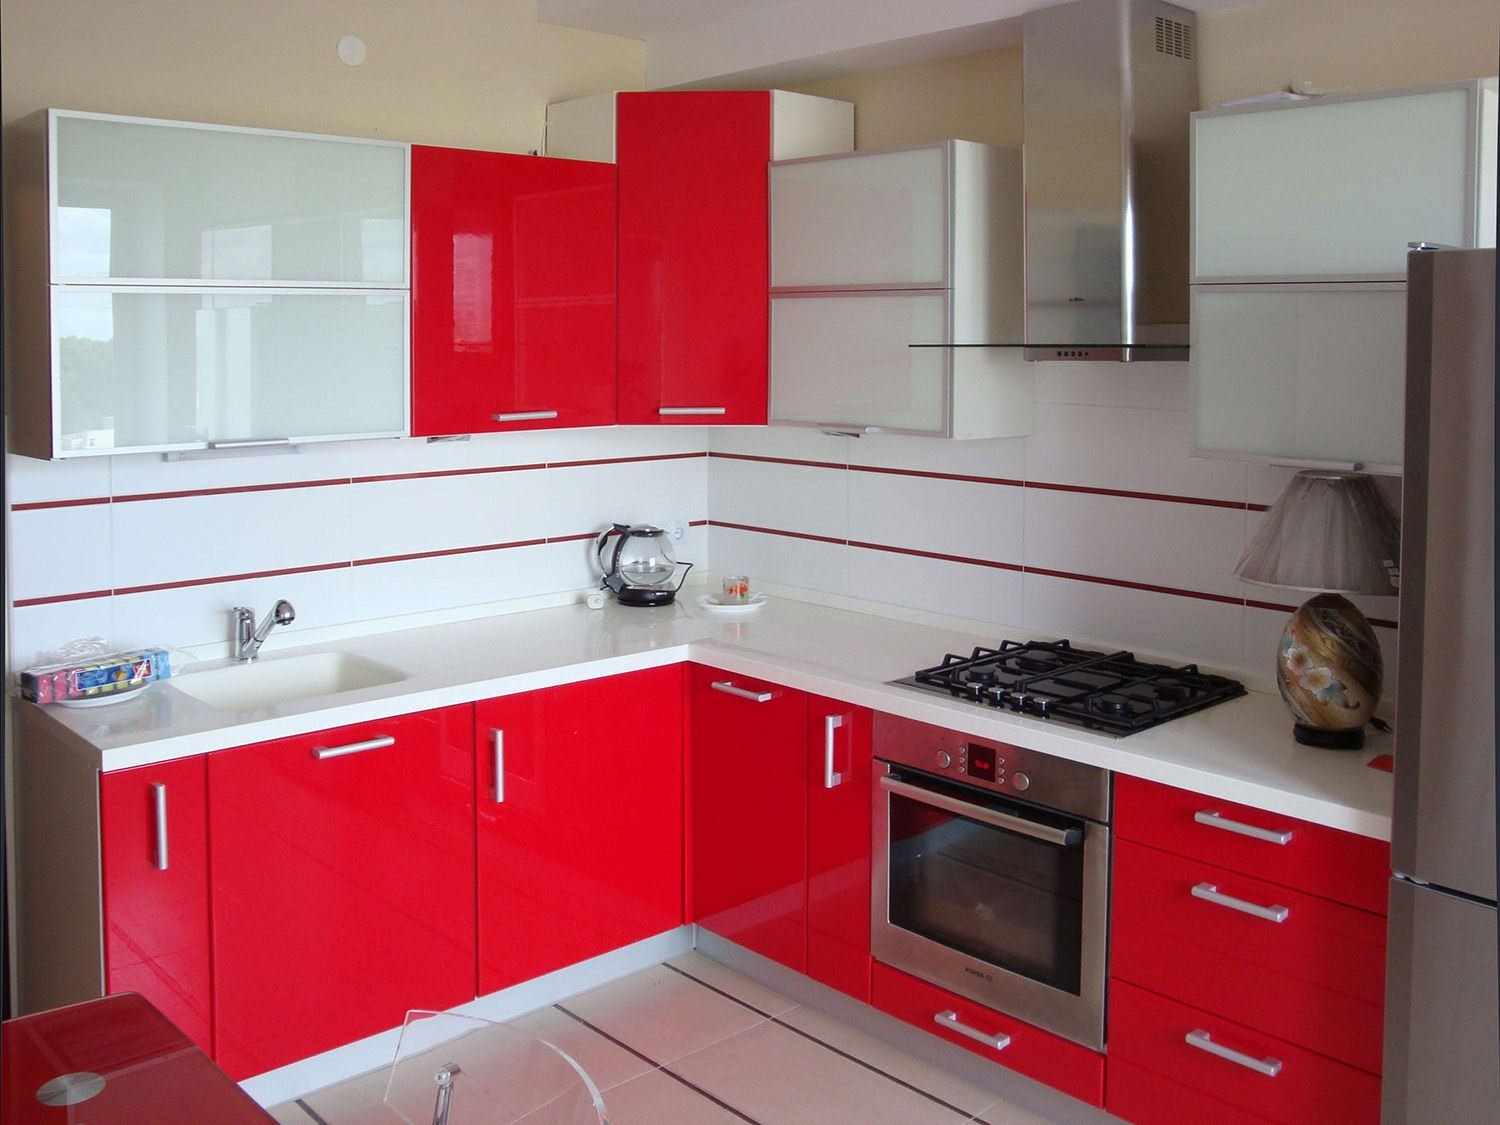 مثال على تصميم المطبخ الأحمر الفاتح